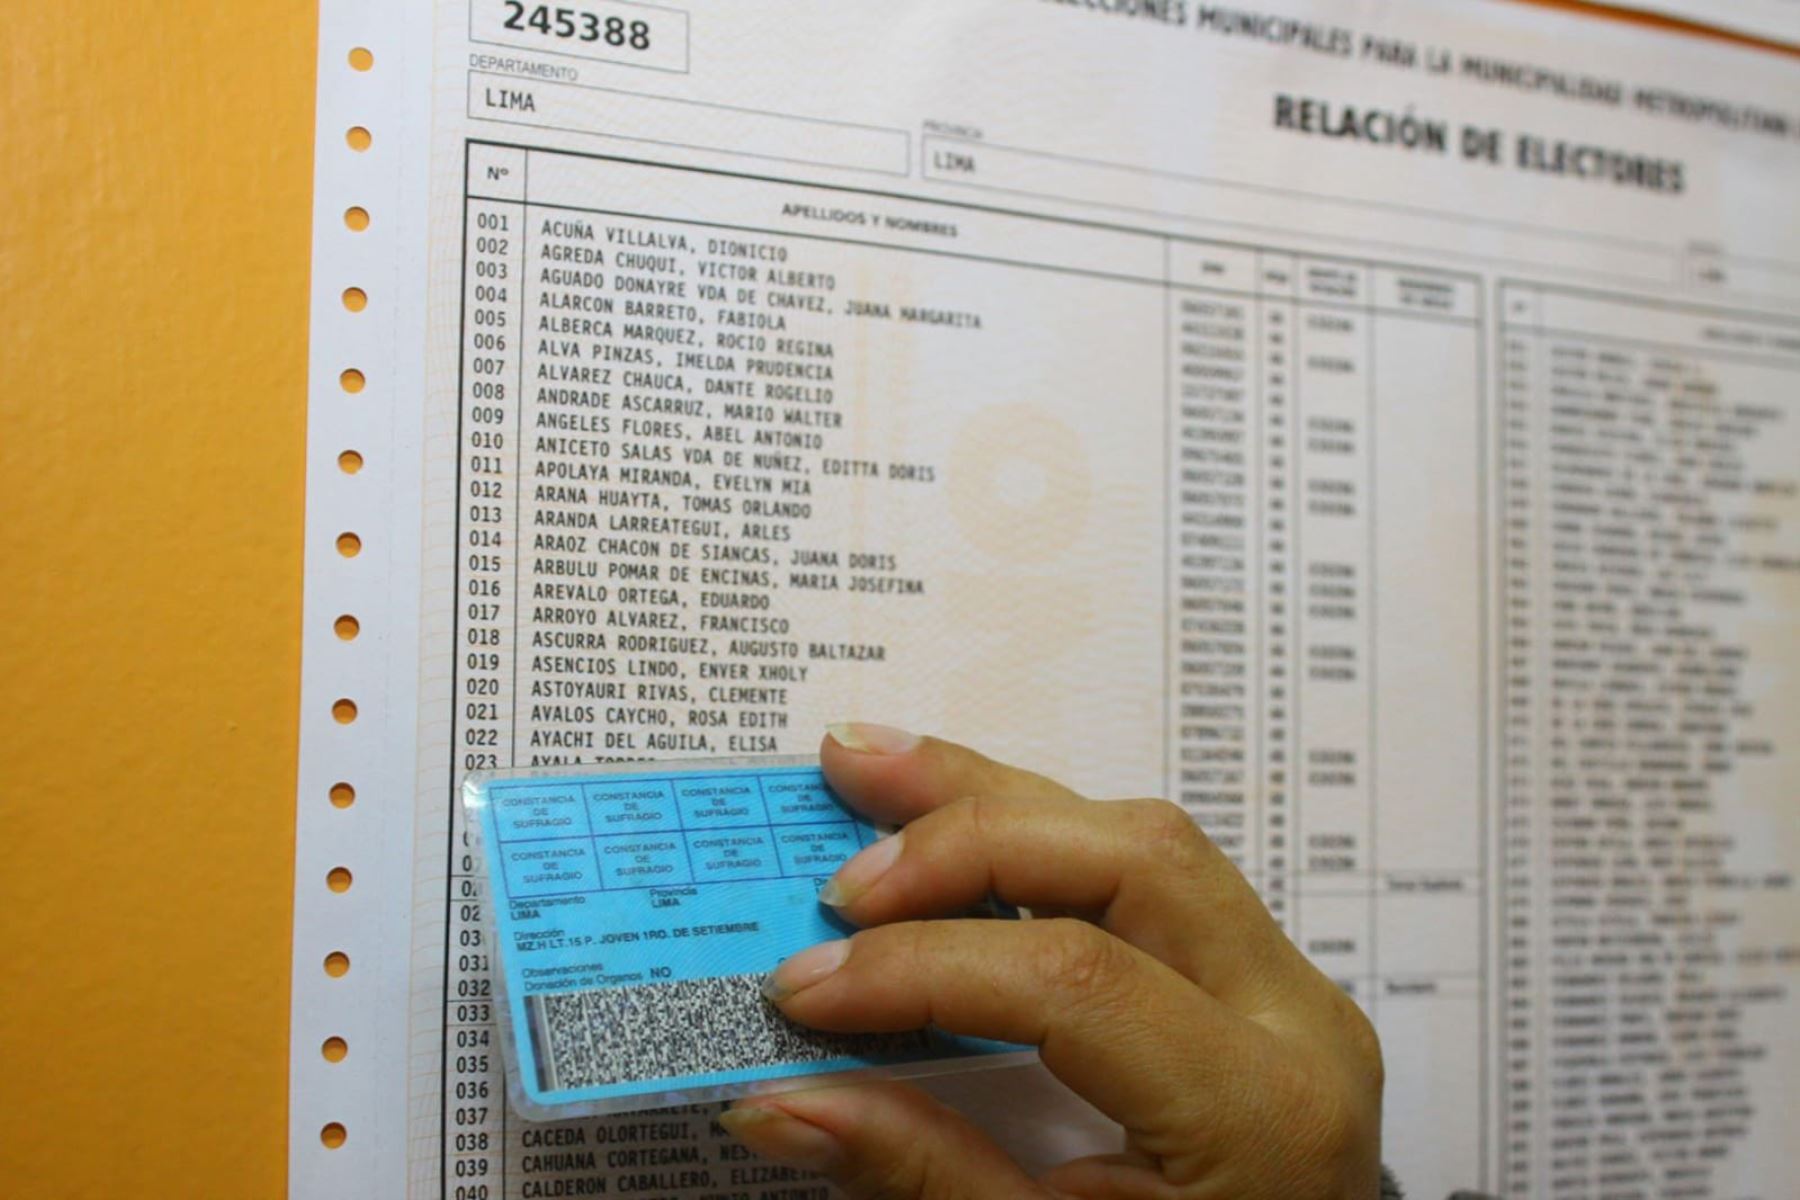 Listado de electores inscritos en Reniec (imagen referencial). Foto: ANDINA/Reniec.